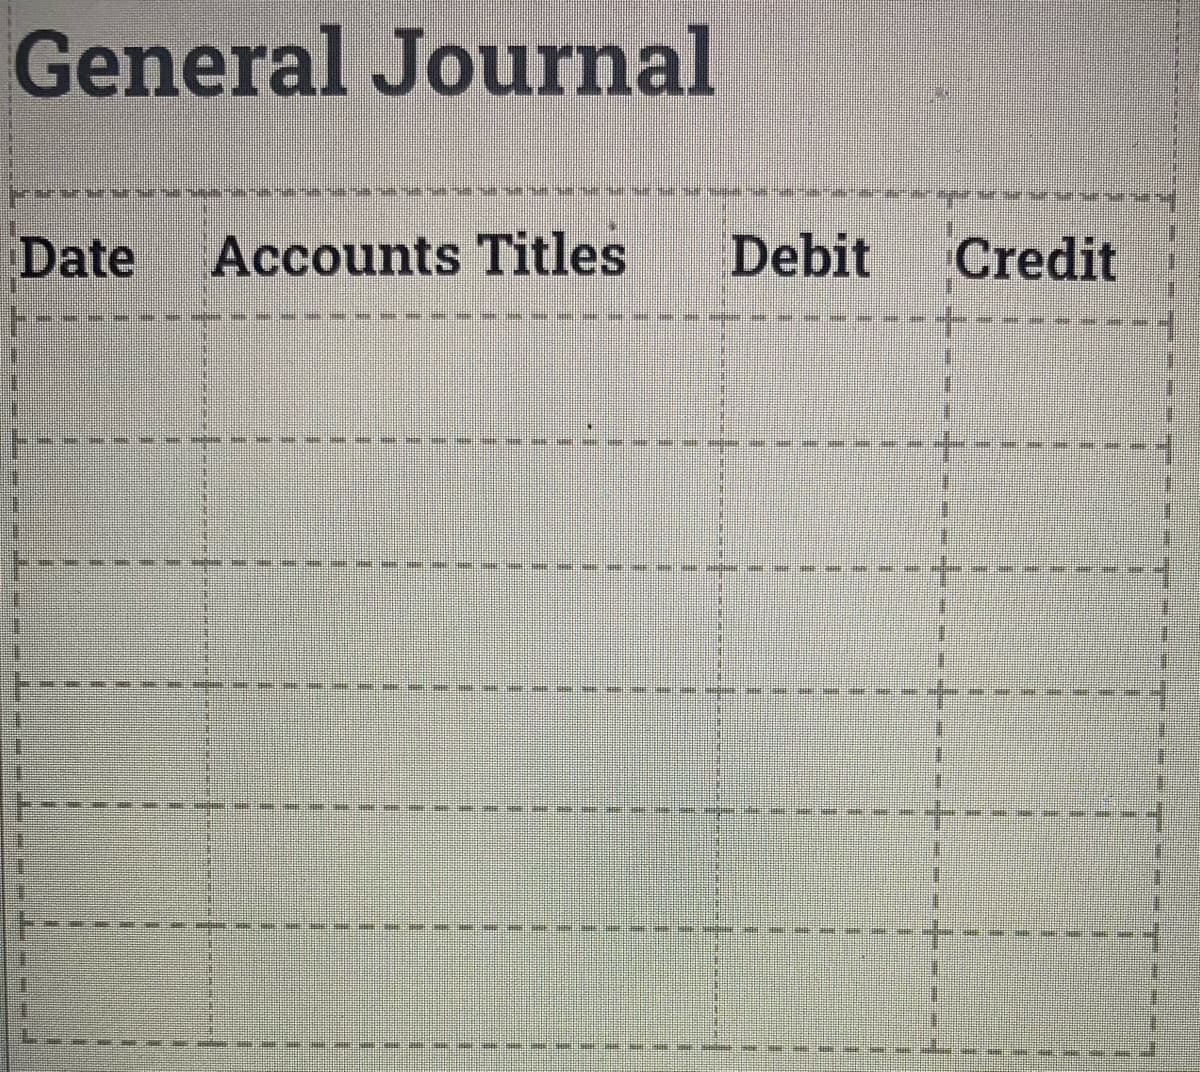 General Journal
Date
Accounts Titles
Debit
Credit
